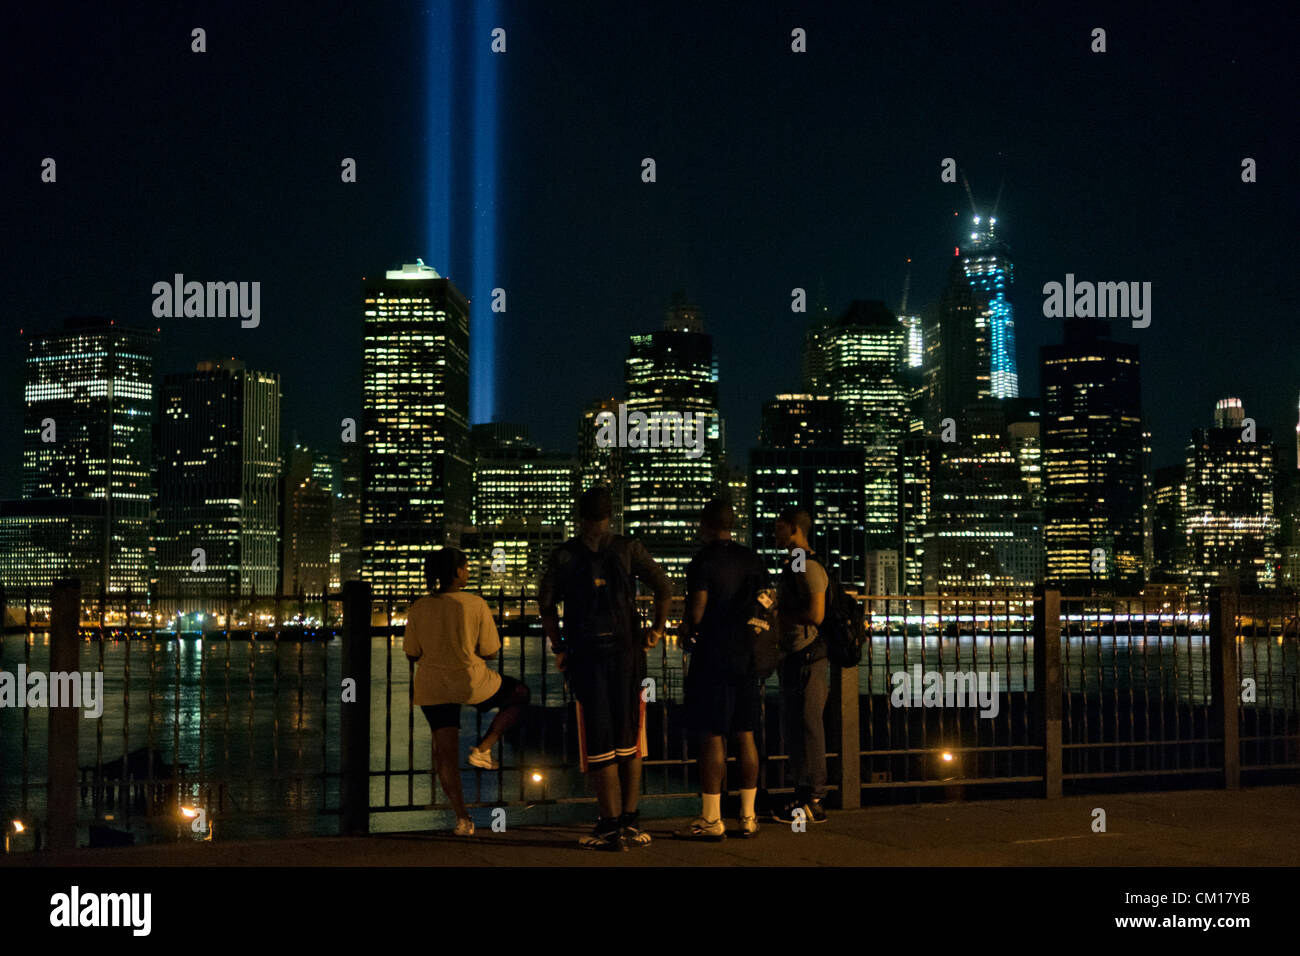 New York, Stati Uniti d'America. 11 settembre 2012. Persone si sono radunate sulla Passeggiata di Brooklyn Heights vicino a mezzanotte dell'undicesimo anniversario del 9/11 attacchi terroristici e guardato il tributo annuale in luce per le vittime. Foto Stock